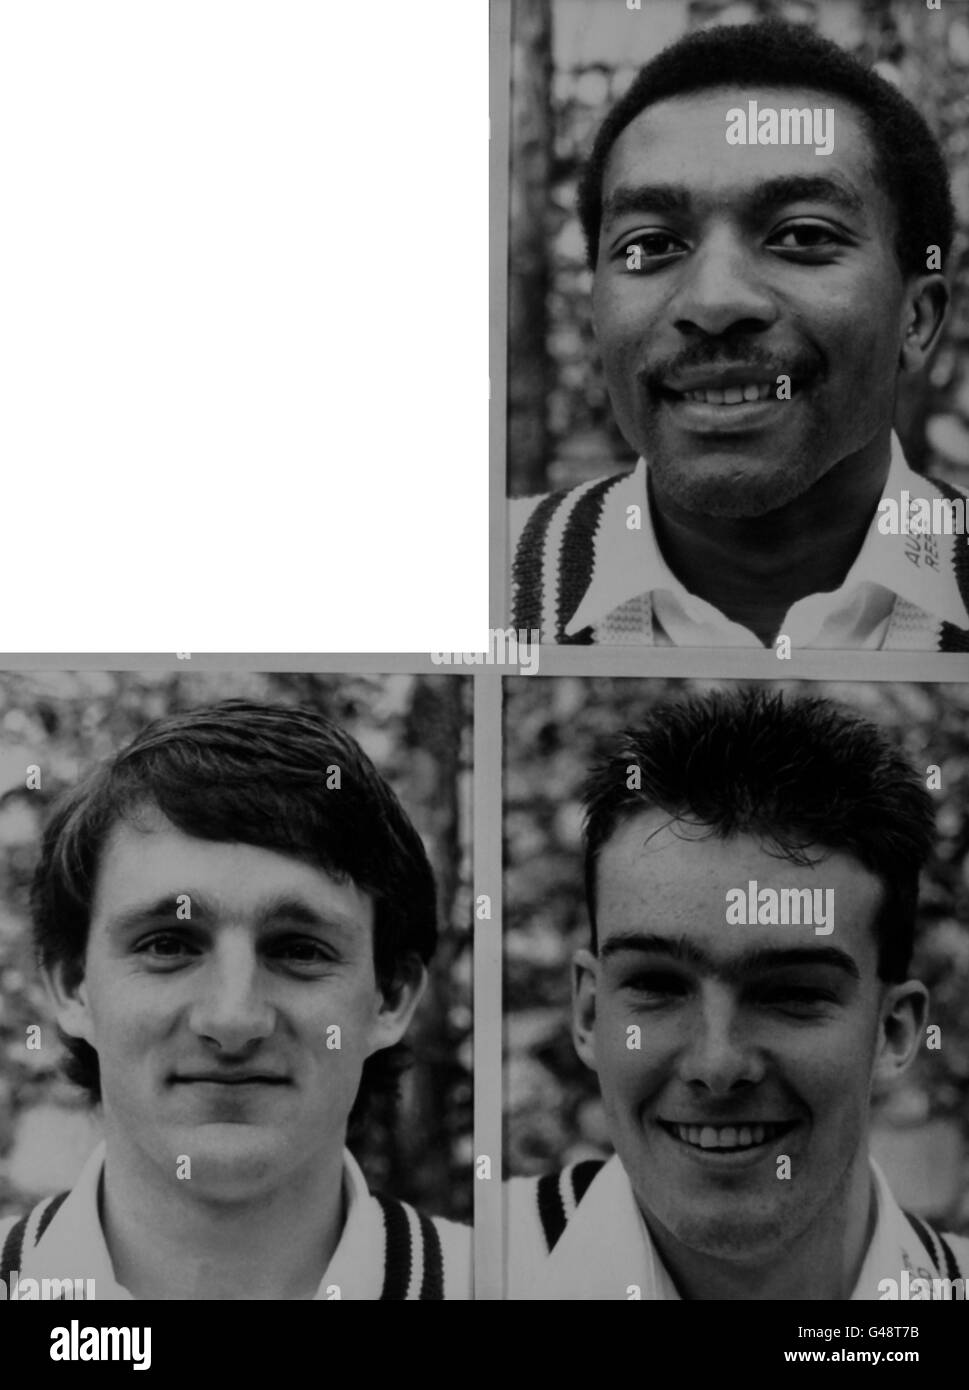 Cricket - Middlesex County Cricket Team - 1987 - Ritratti. Membri del Middlesex CCC per la stagione 1987, a Lords. In alto; Neil Williams, in basso, da sinistra a destra; Ian Hutchinson e Alastair Fraser. Foto Stock